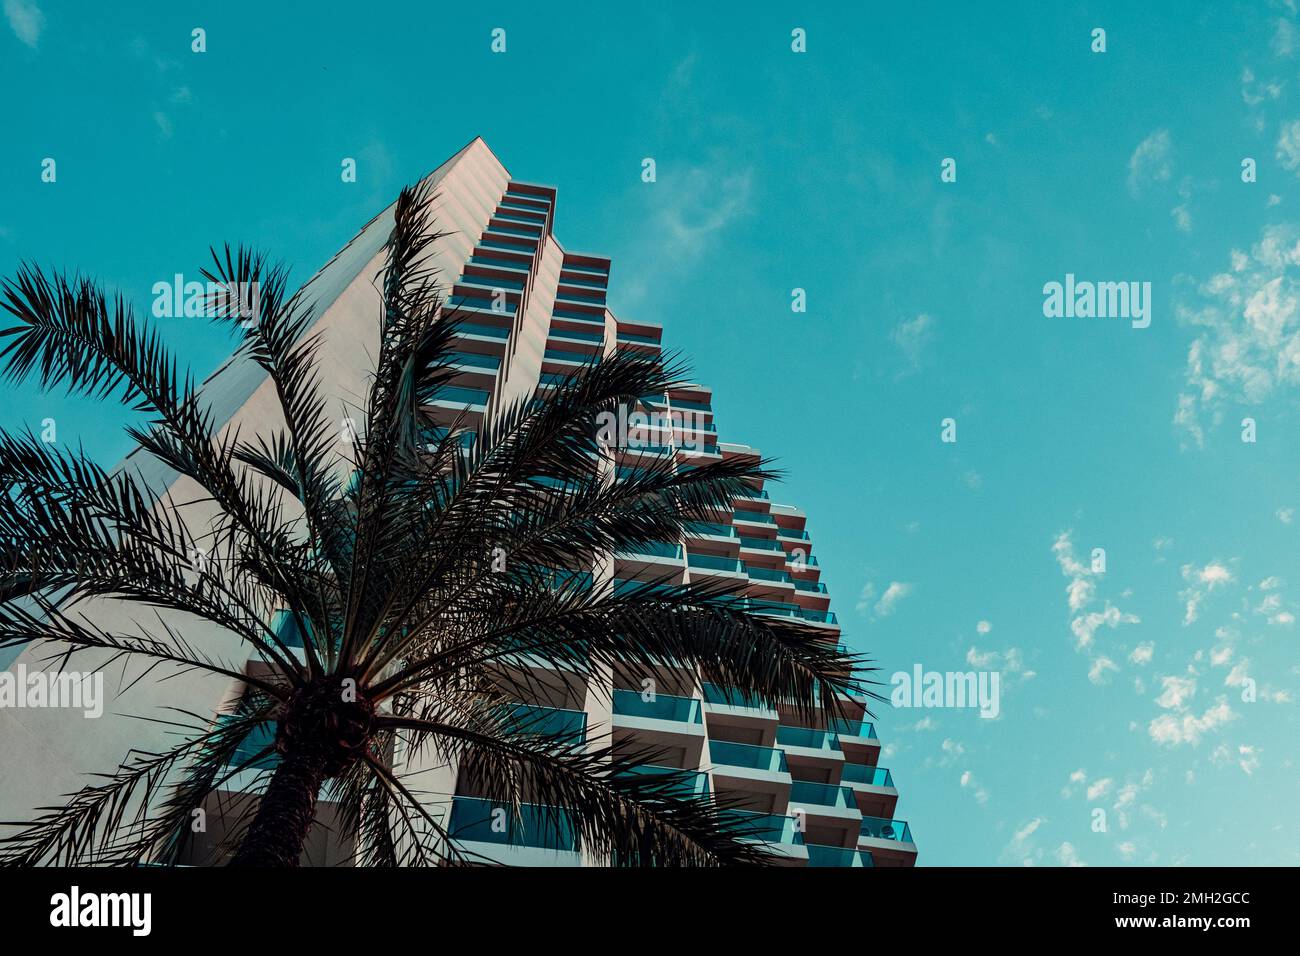 Abstrakter architektonischer Hintergrund mit weißem, modernem Betonhaus, Fragment und Palmen unter blauem, wolkigen Himmel. Ansicht aus niedrigem Winkel Stockfoto